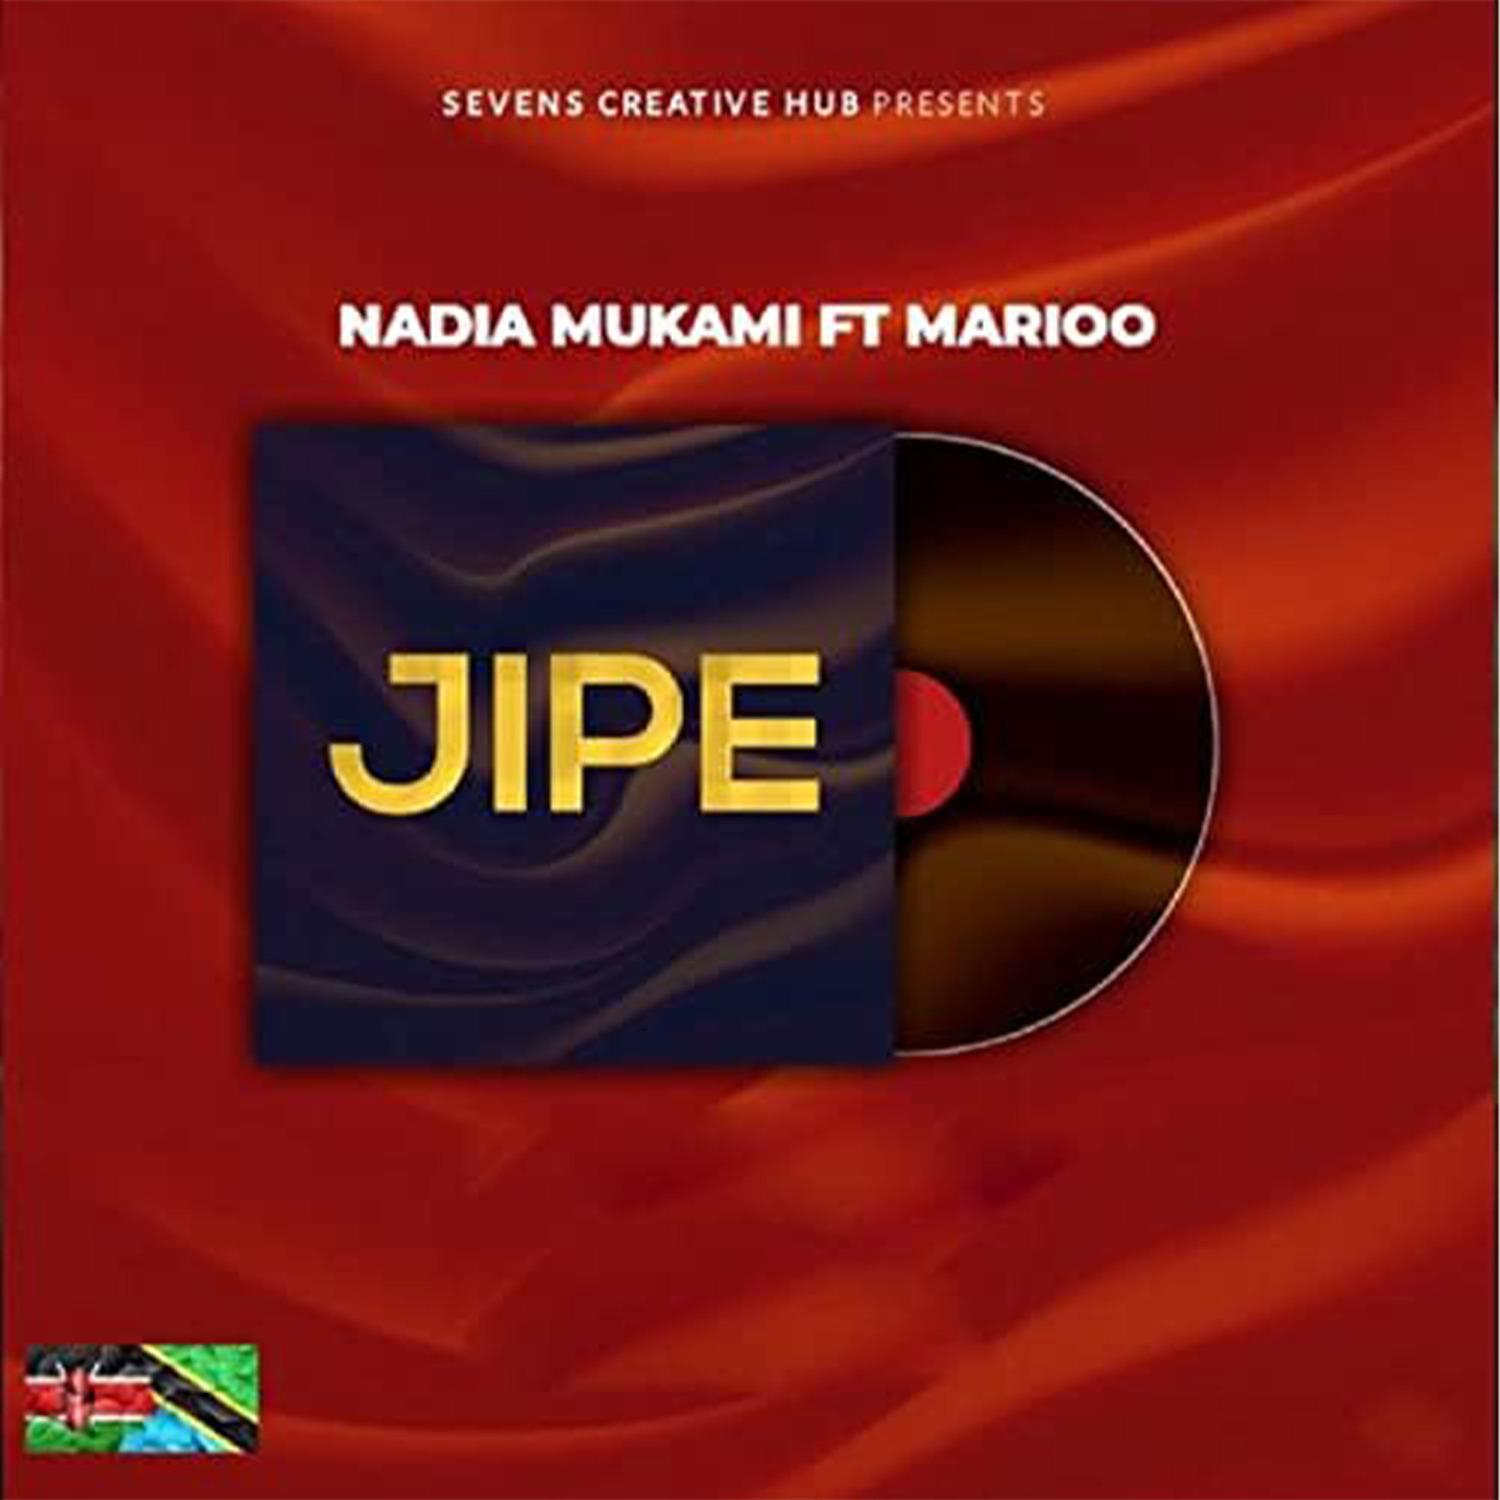 Nadia Mukami - Jipe